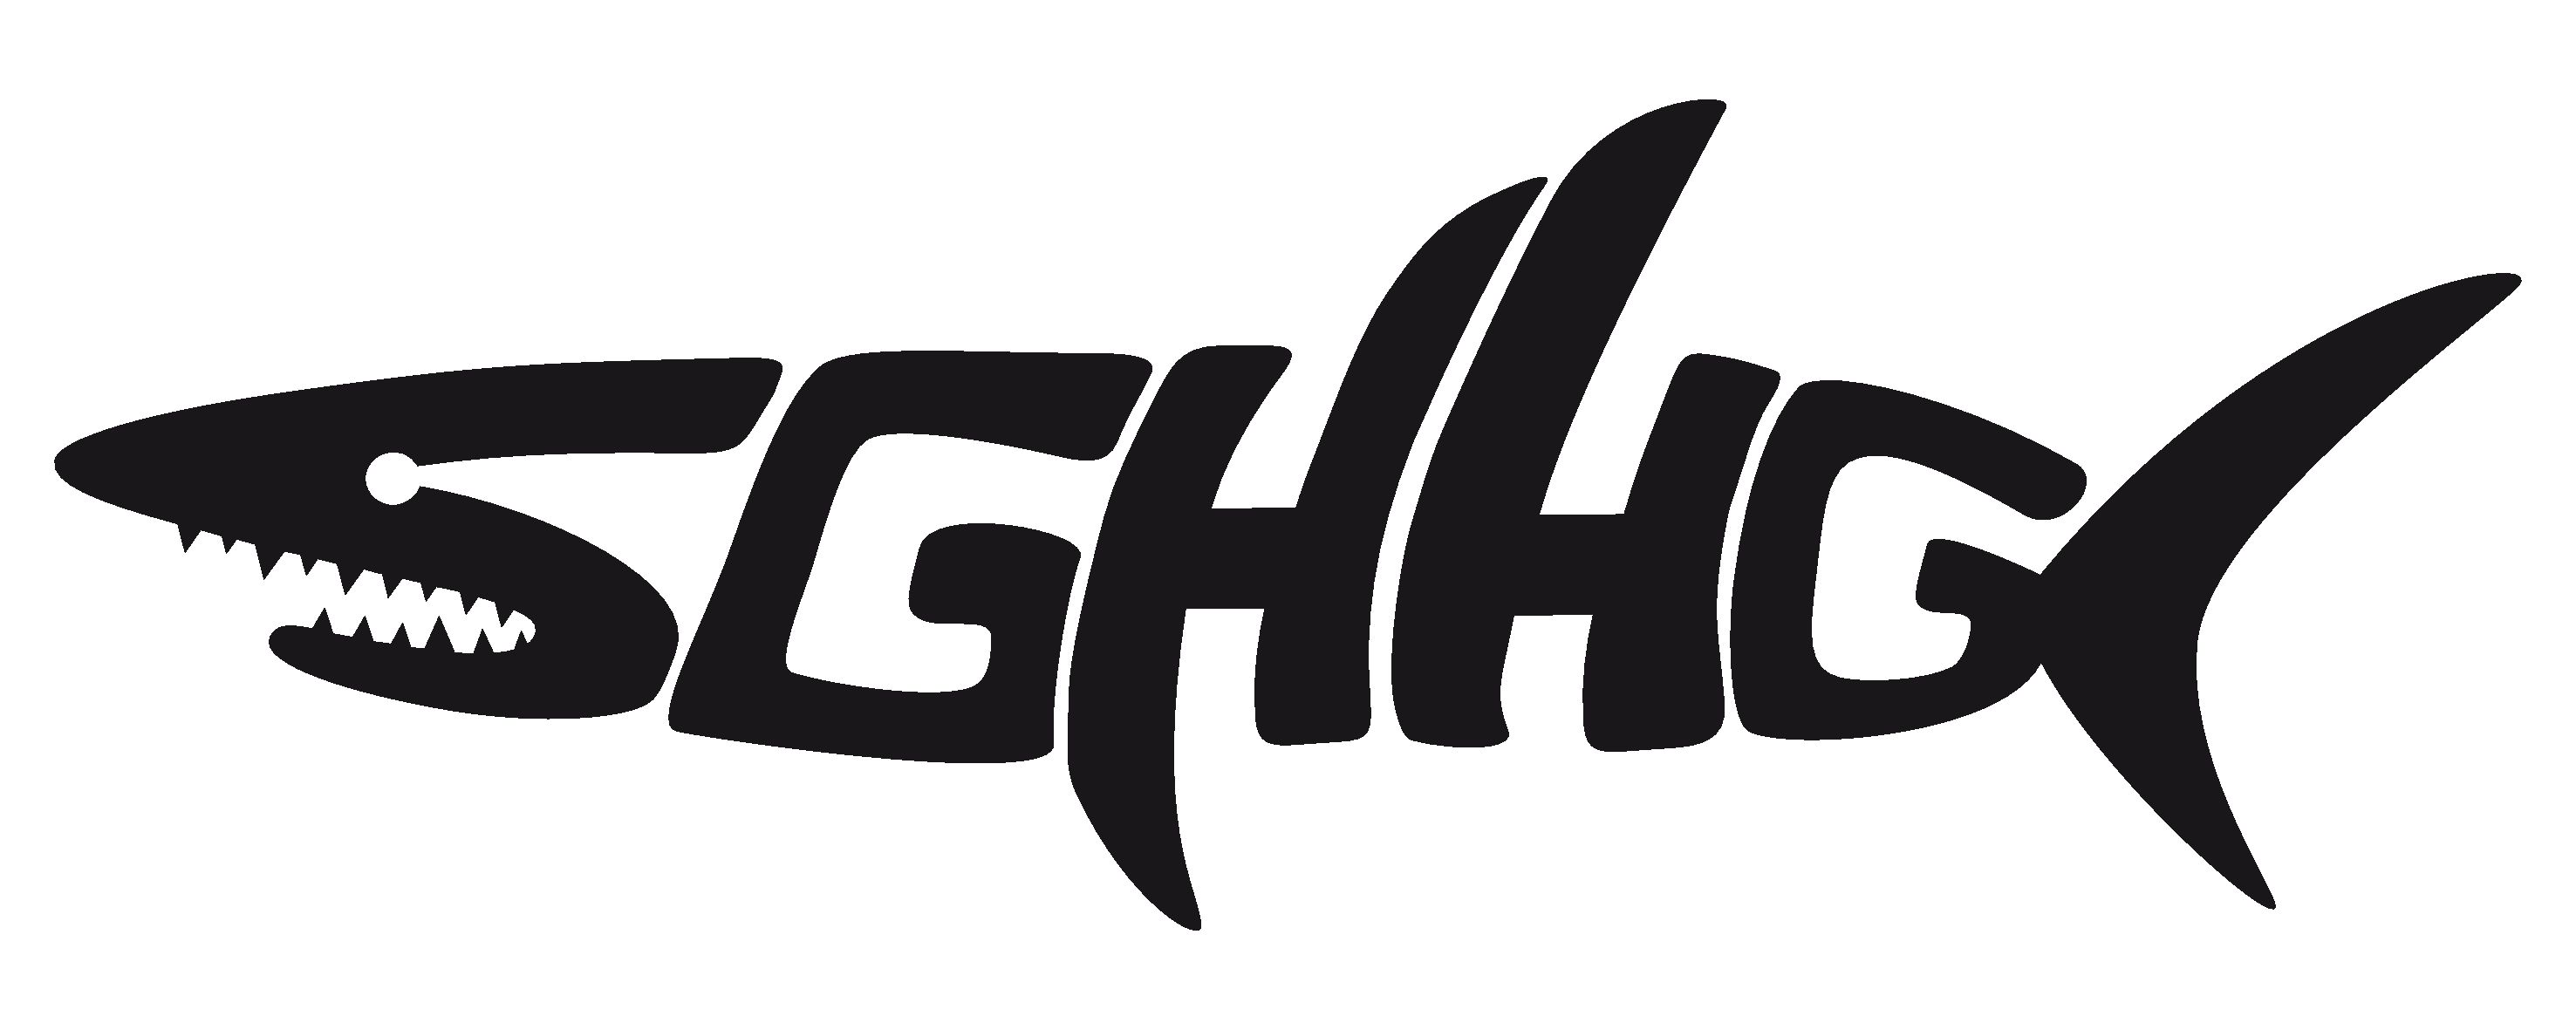 Logo SG Heidelsheim/Helmsheim/Gondelsheim 2